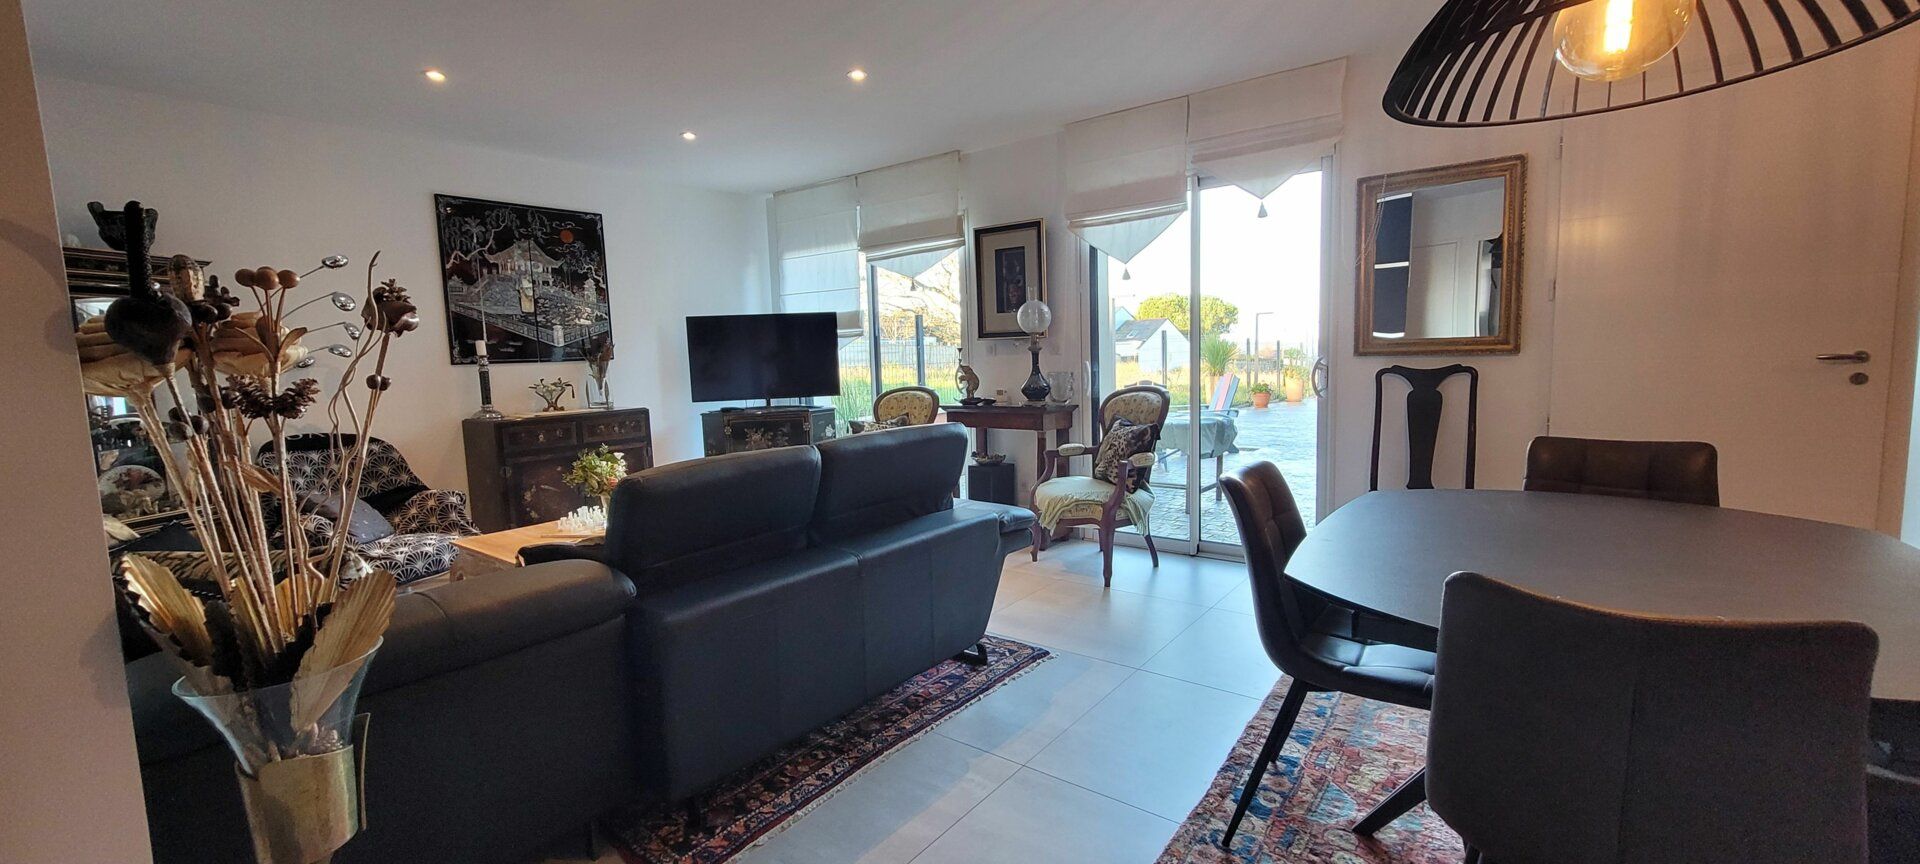 Maison à vendre 4 118m2 à Piriac-sur-Mer vignette-6